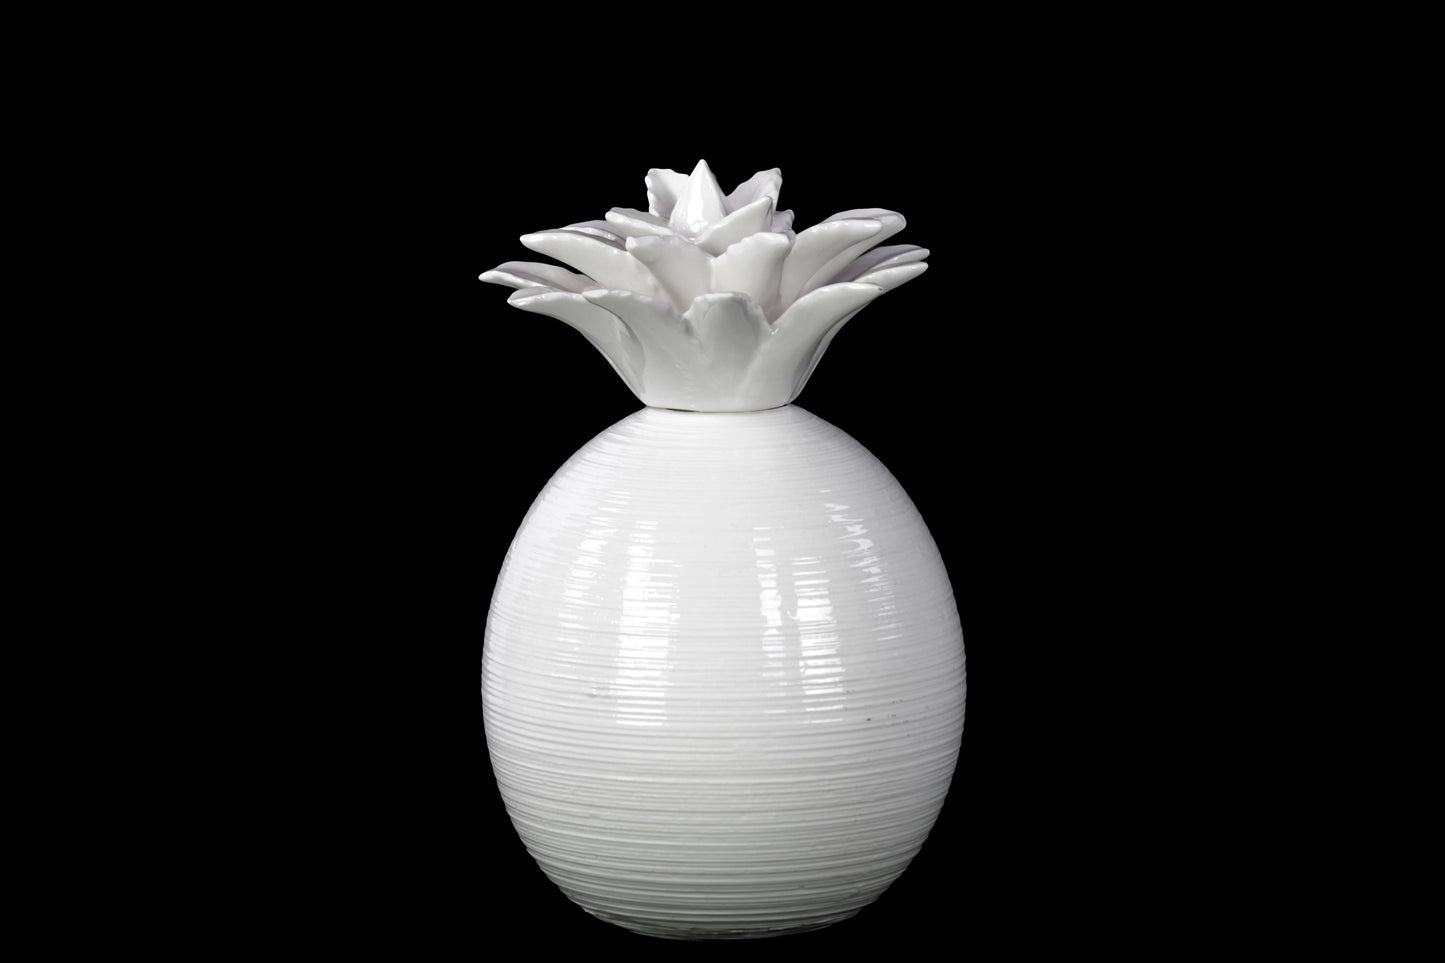 8" Ceramic Pineapple Figurine Gloss Finish White